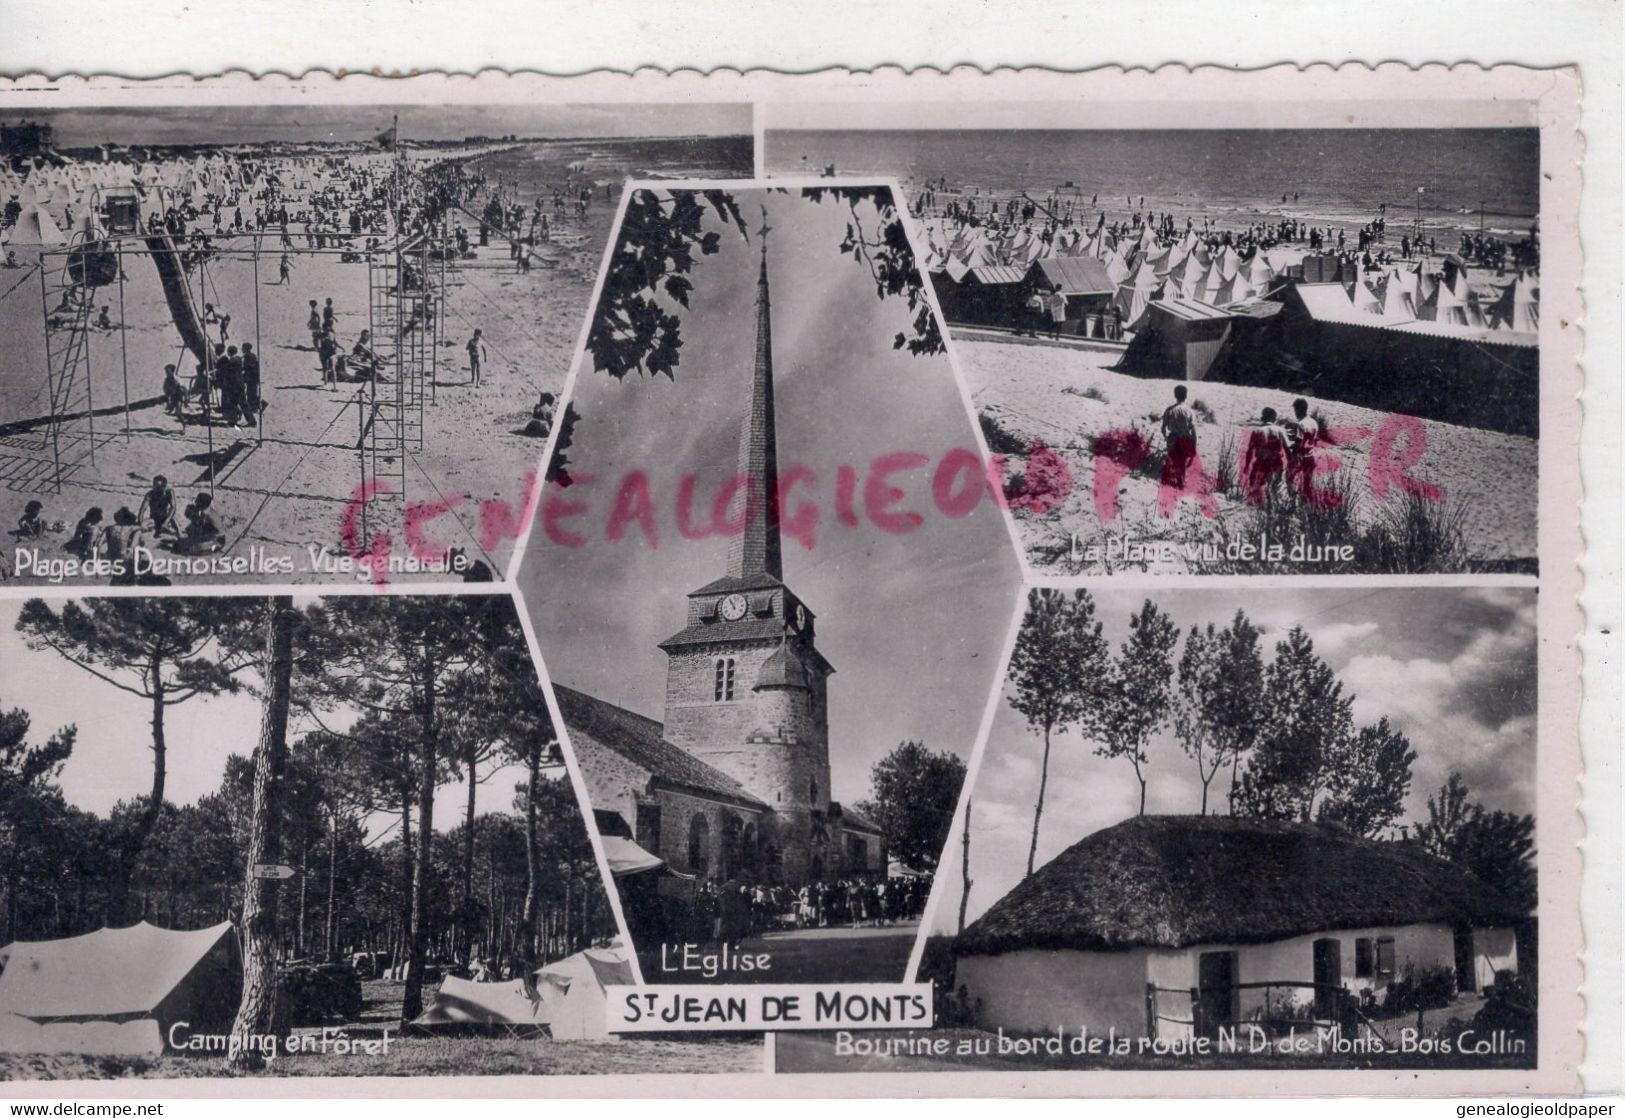 85- SAINT JEAN DE MONTS- ST JEAN DE MONTS-EGLISE- PLAGE DES DEMOISELLES- CAMPING-PLAGE DE LA DUNE-1954- VENDEE - Saint Jean De Monts